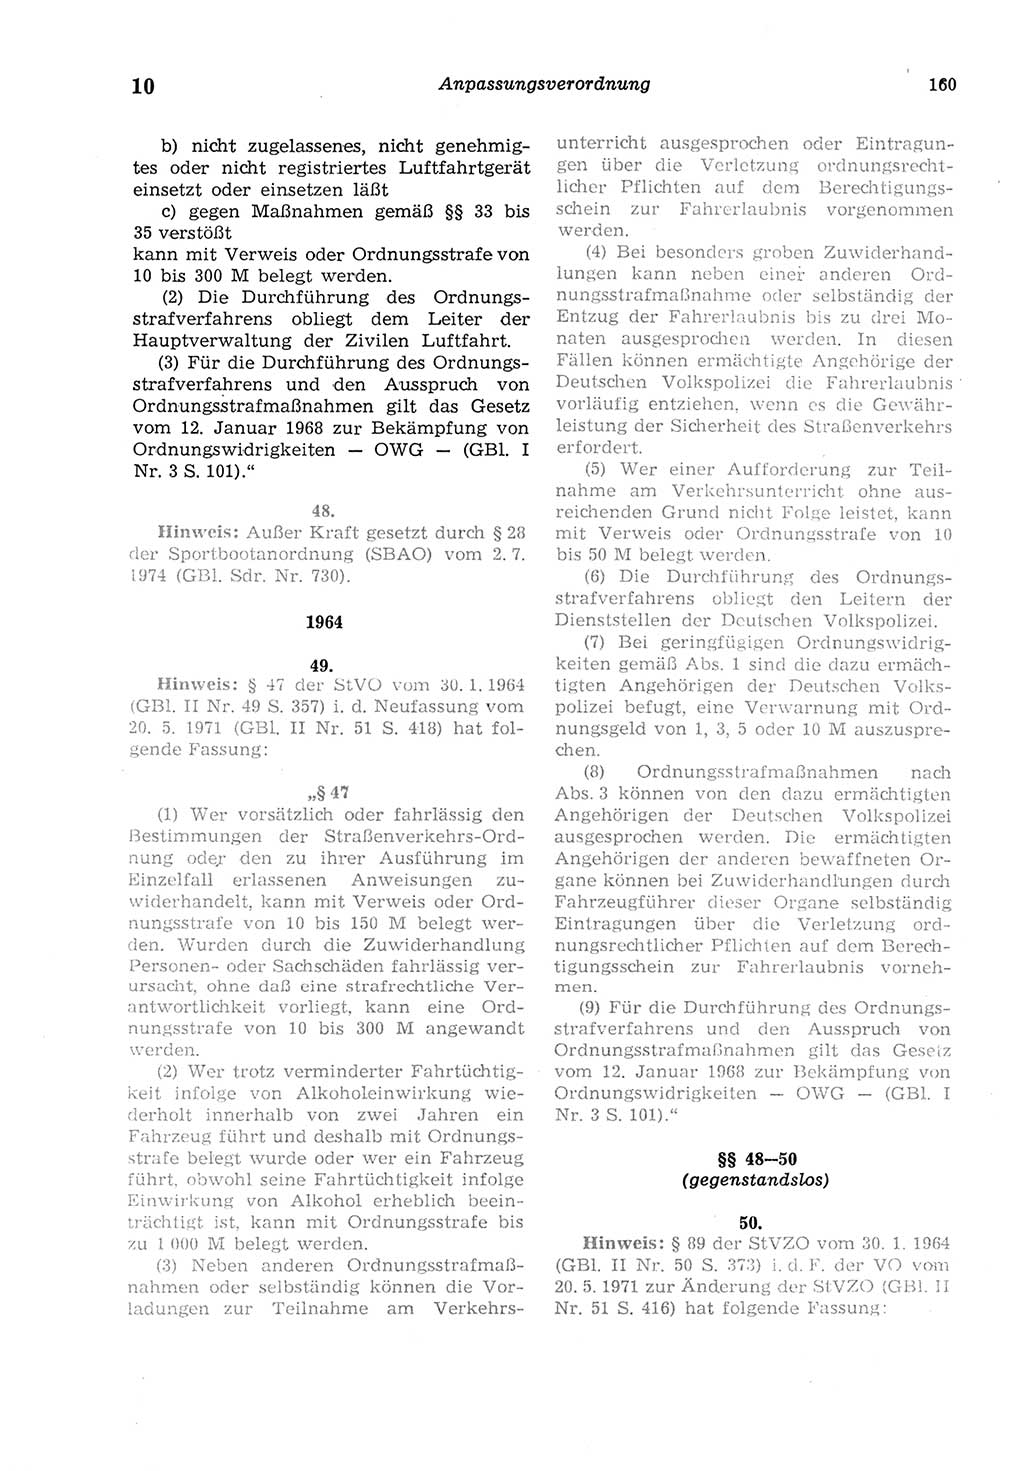 Strafgesetzbuch (StGB) der Deutschen Demokratischen Republik (DDR) und angrenzende Gesetze und Bestimmungen 1975, Seite 160 (StGB DDR Ges. Best. 1975, S. 160)